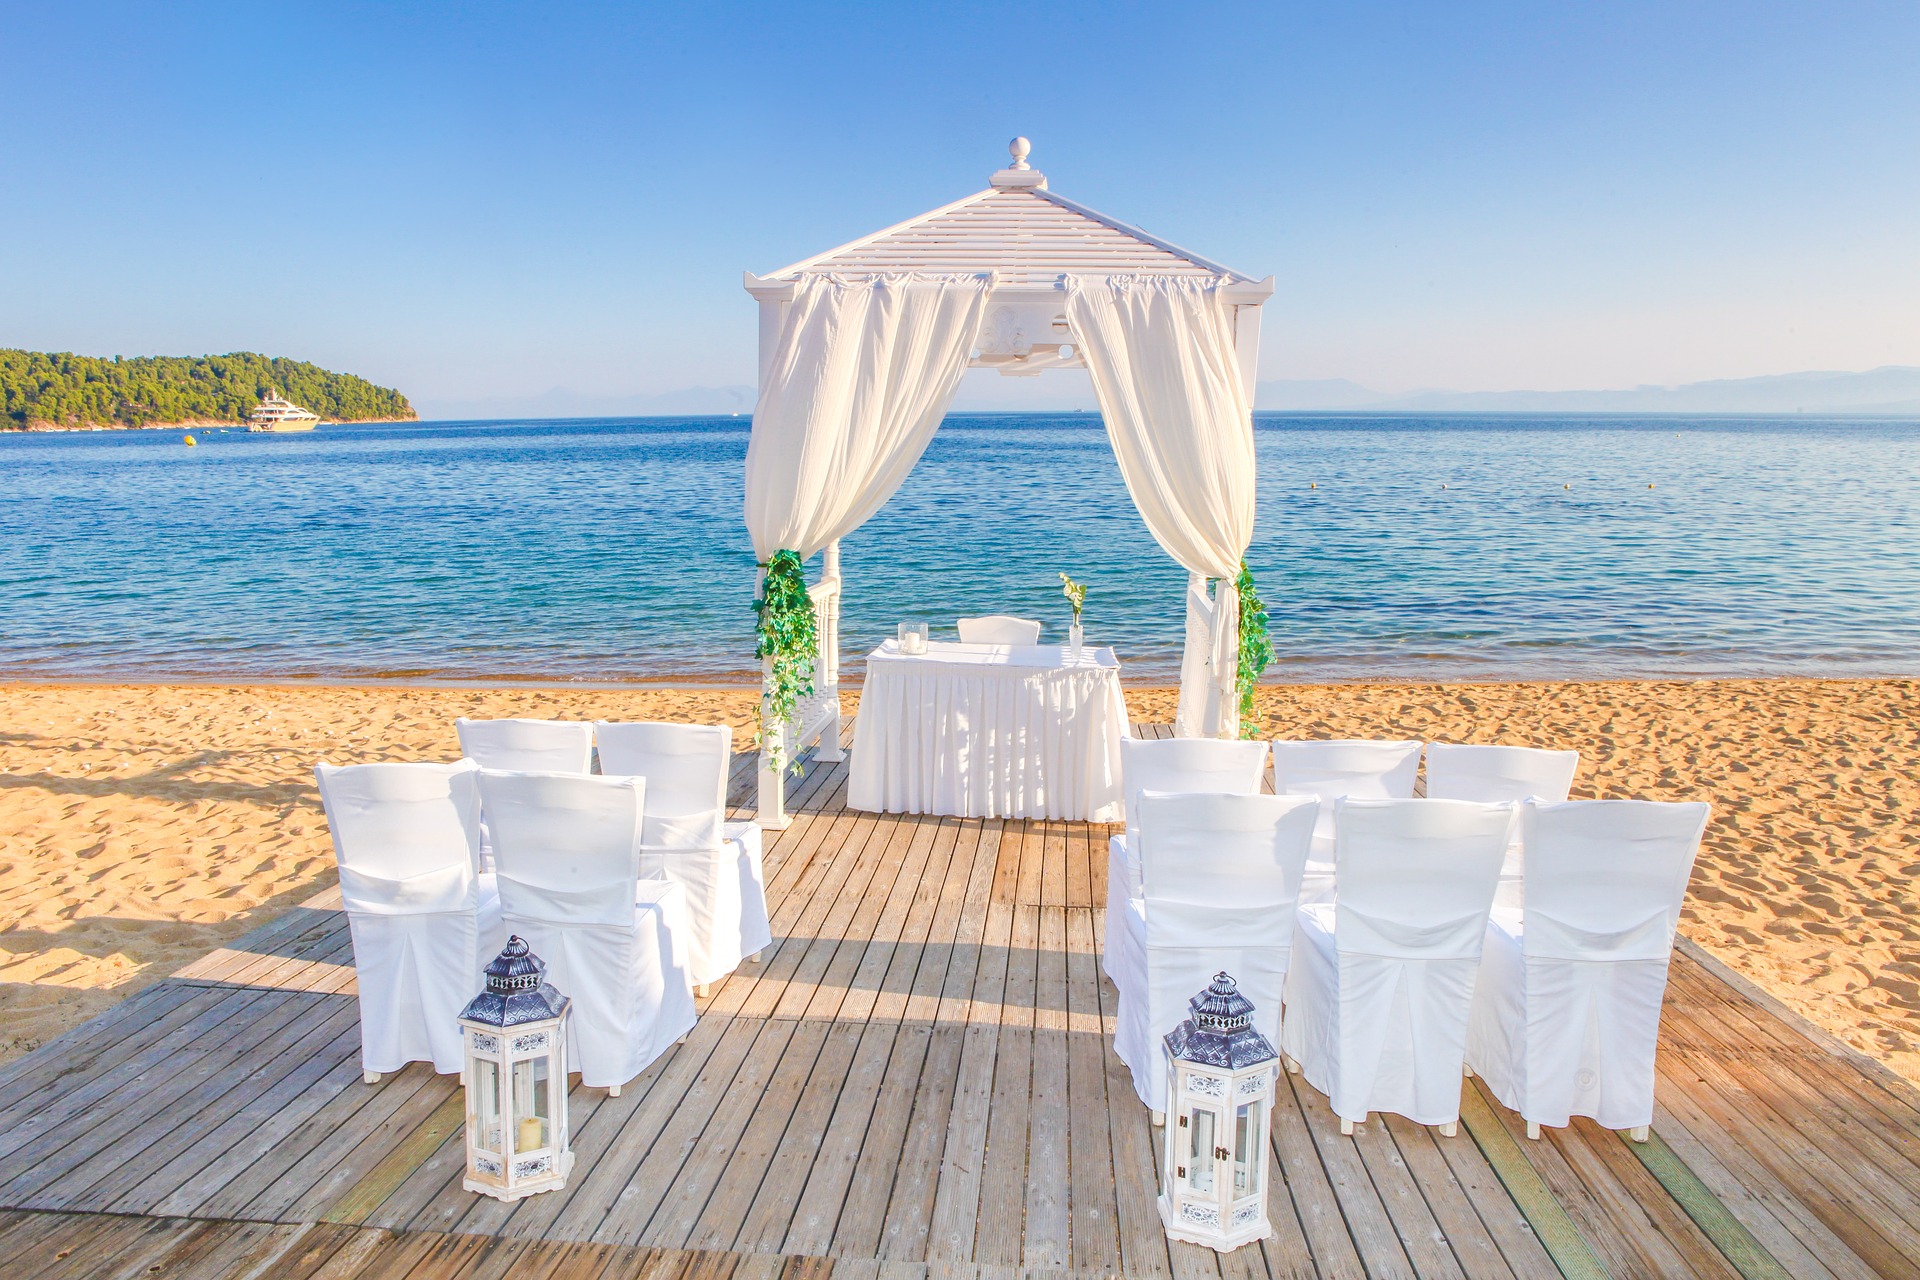 Cérémonie de mariage sur la plage / wedding ceremony on the beach - Saint Martin / SXM